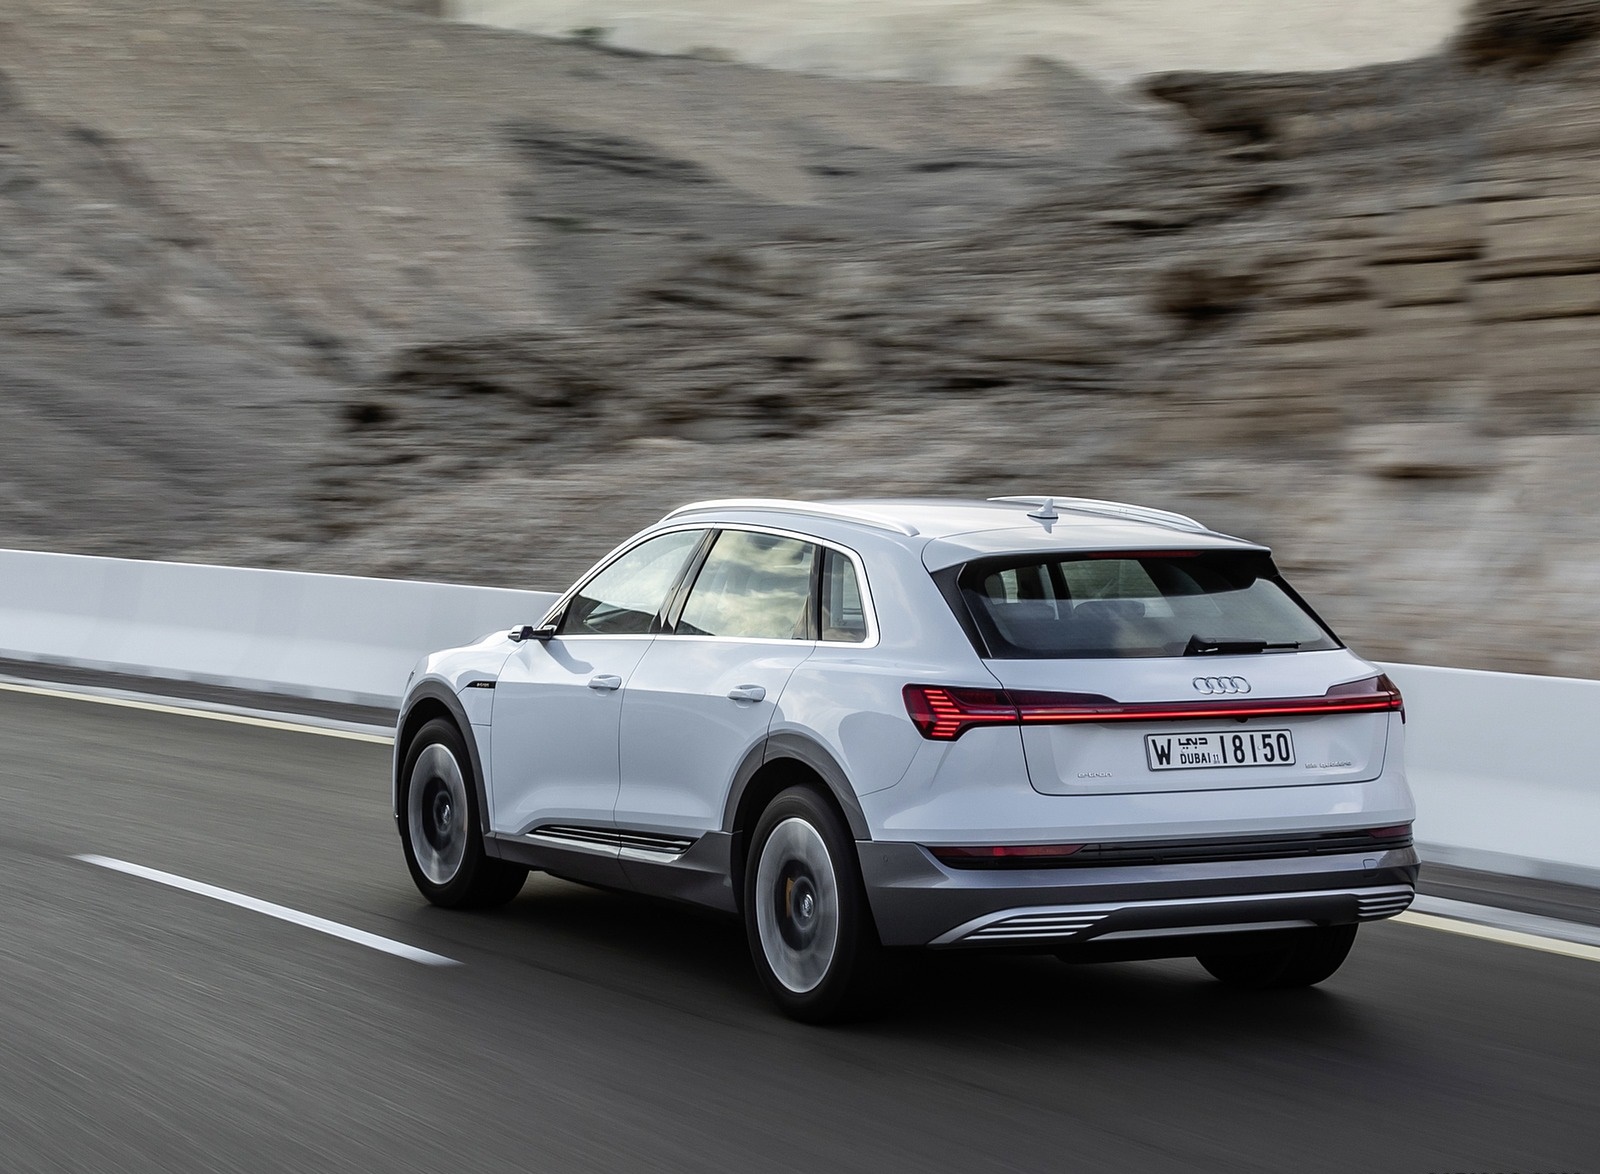 2019 Audi e-tron (Color: Glacier White) Rear Three-Quarter Wallpapers #205 of 234